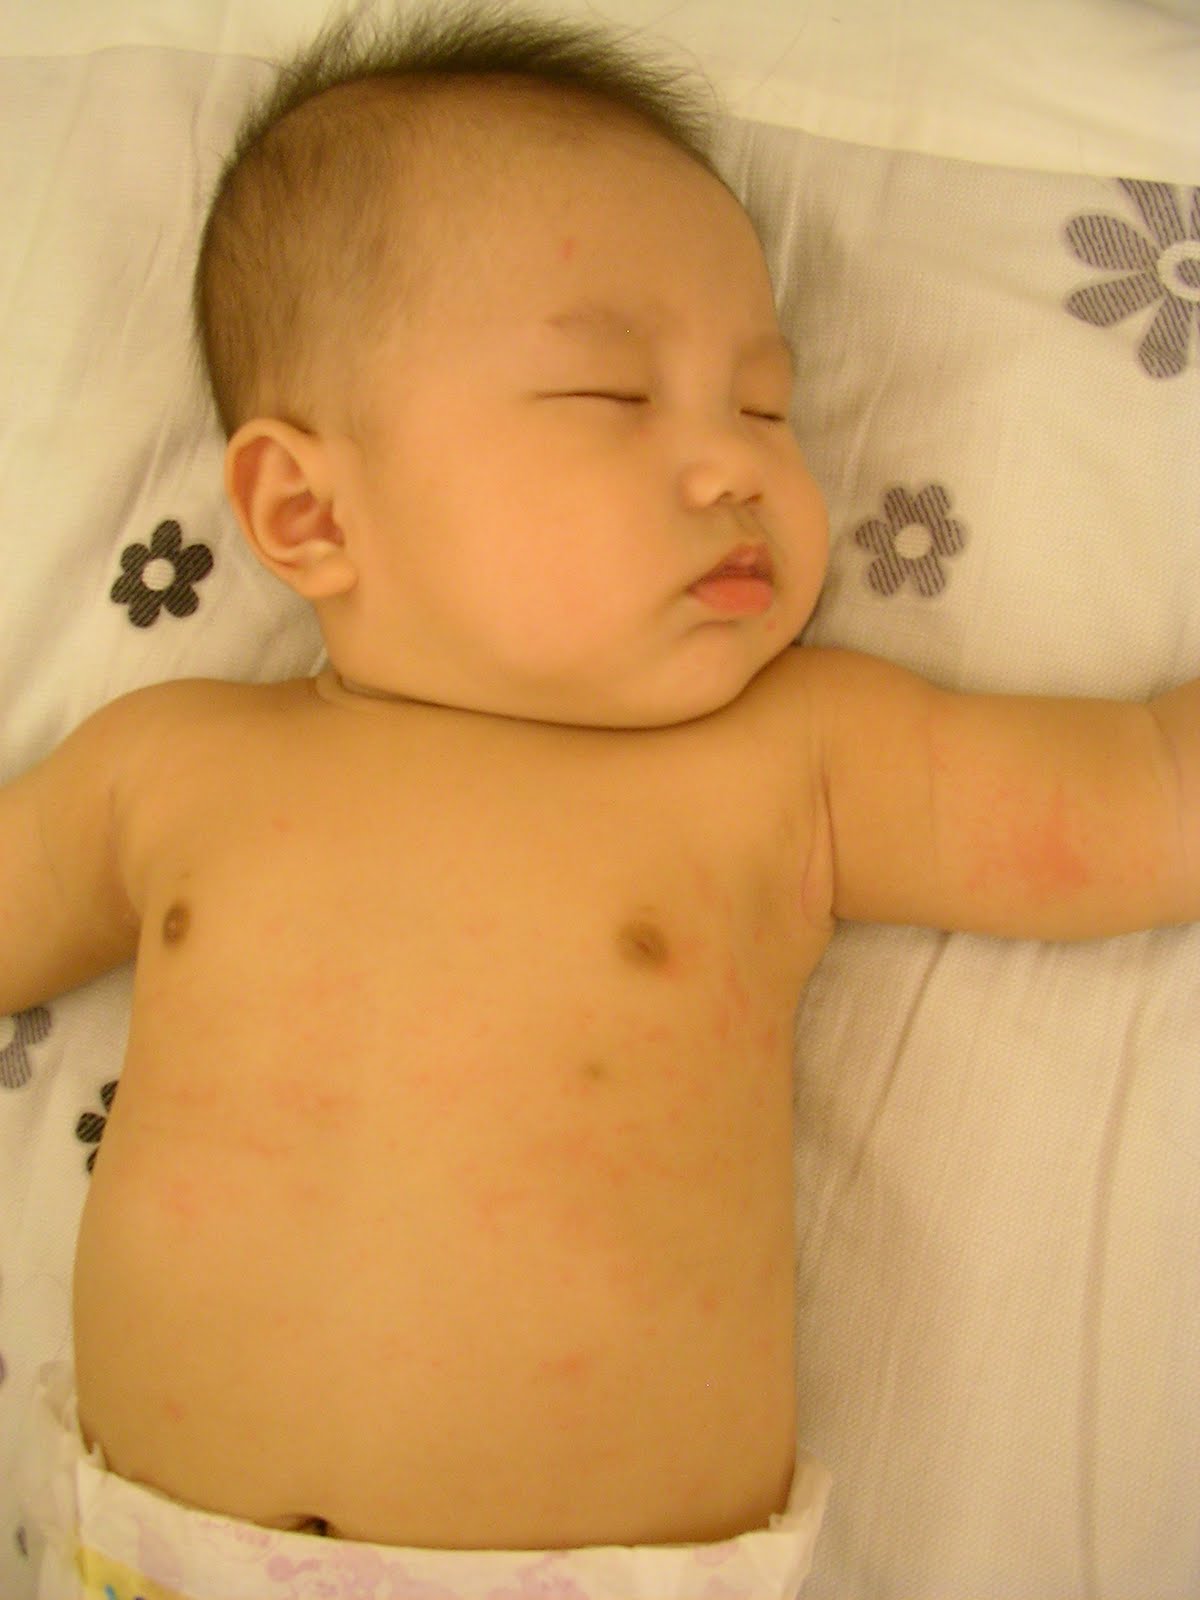 儿童脸部疱疹初期图片 - 动态图库网